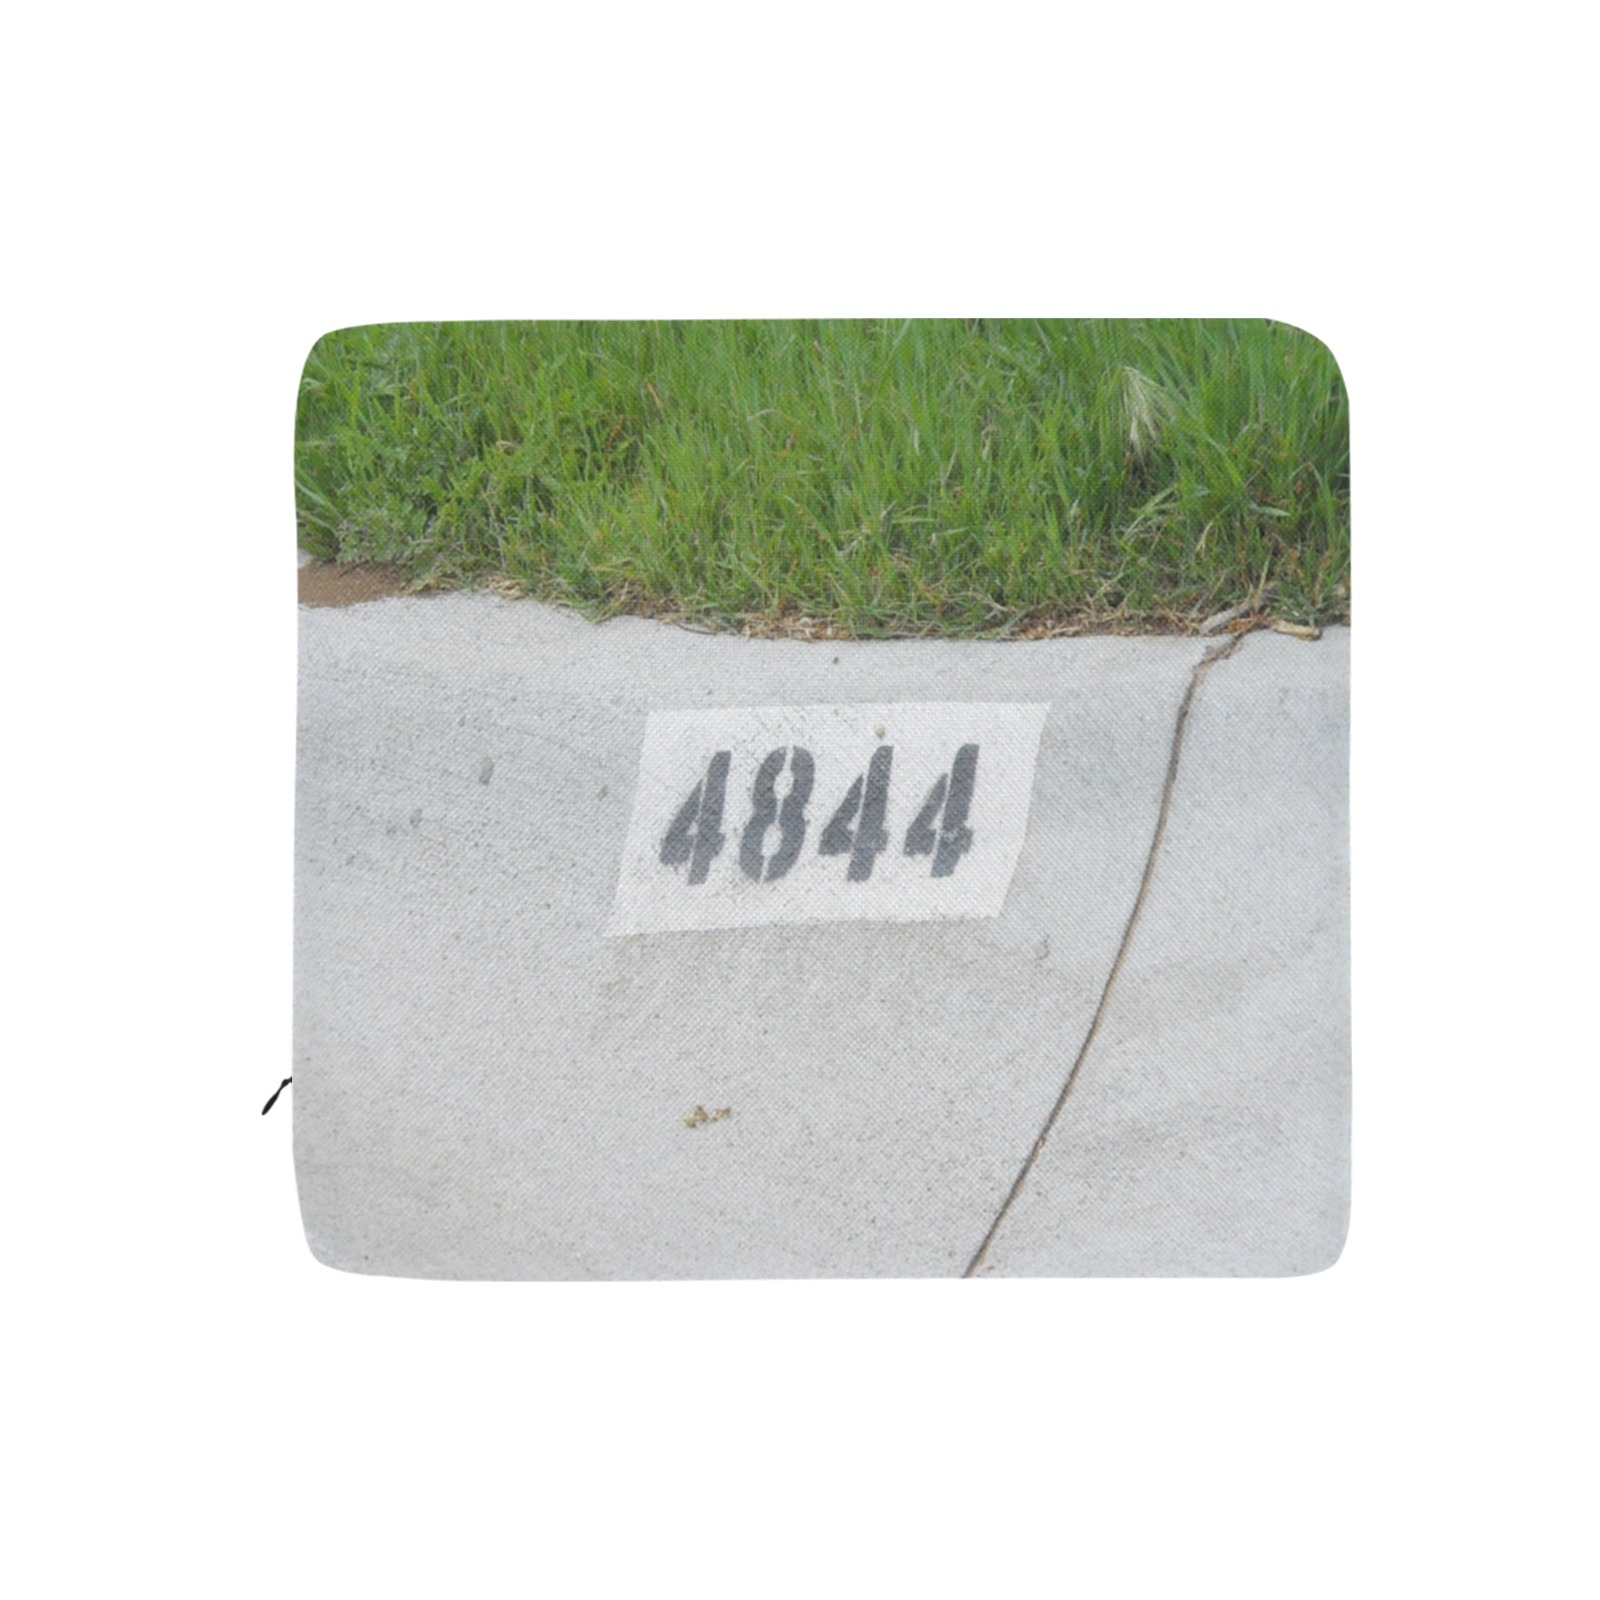 Street Number 4844 Rectangular Seat Cushion